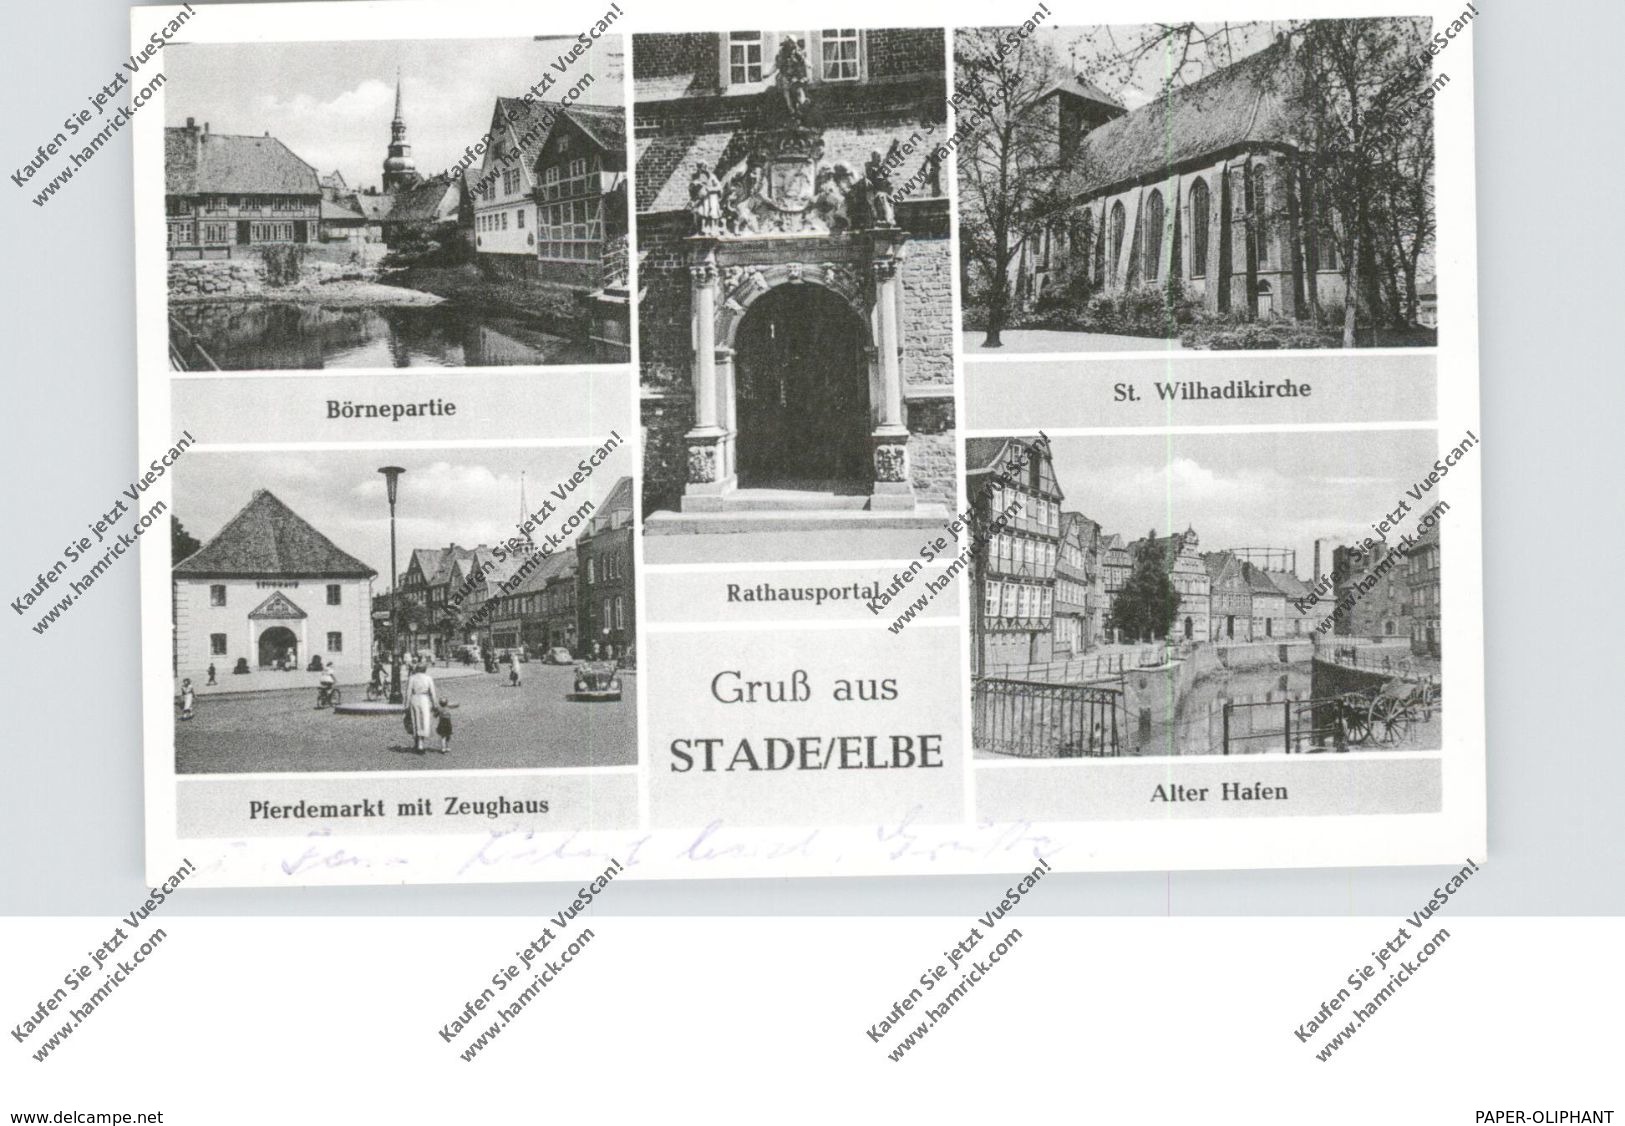 2160 STADE, Mehrbild-AK, Pferdemarkt, VW-Käfer Cabrio, Alter Hafen, Börnepartie, Rathausportal, St.Wilhaldikirche, 1956 - Stade